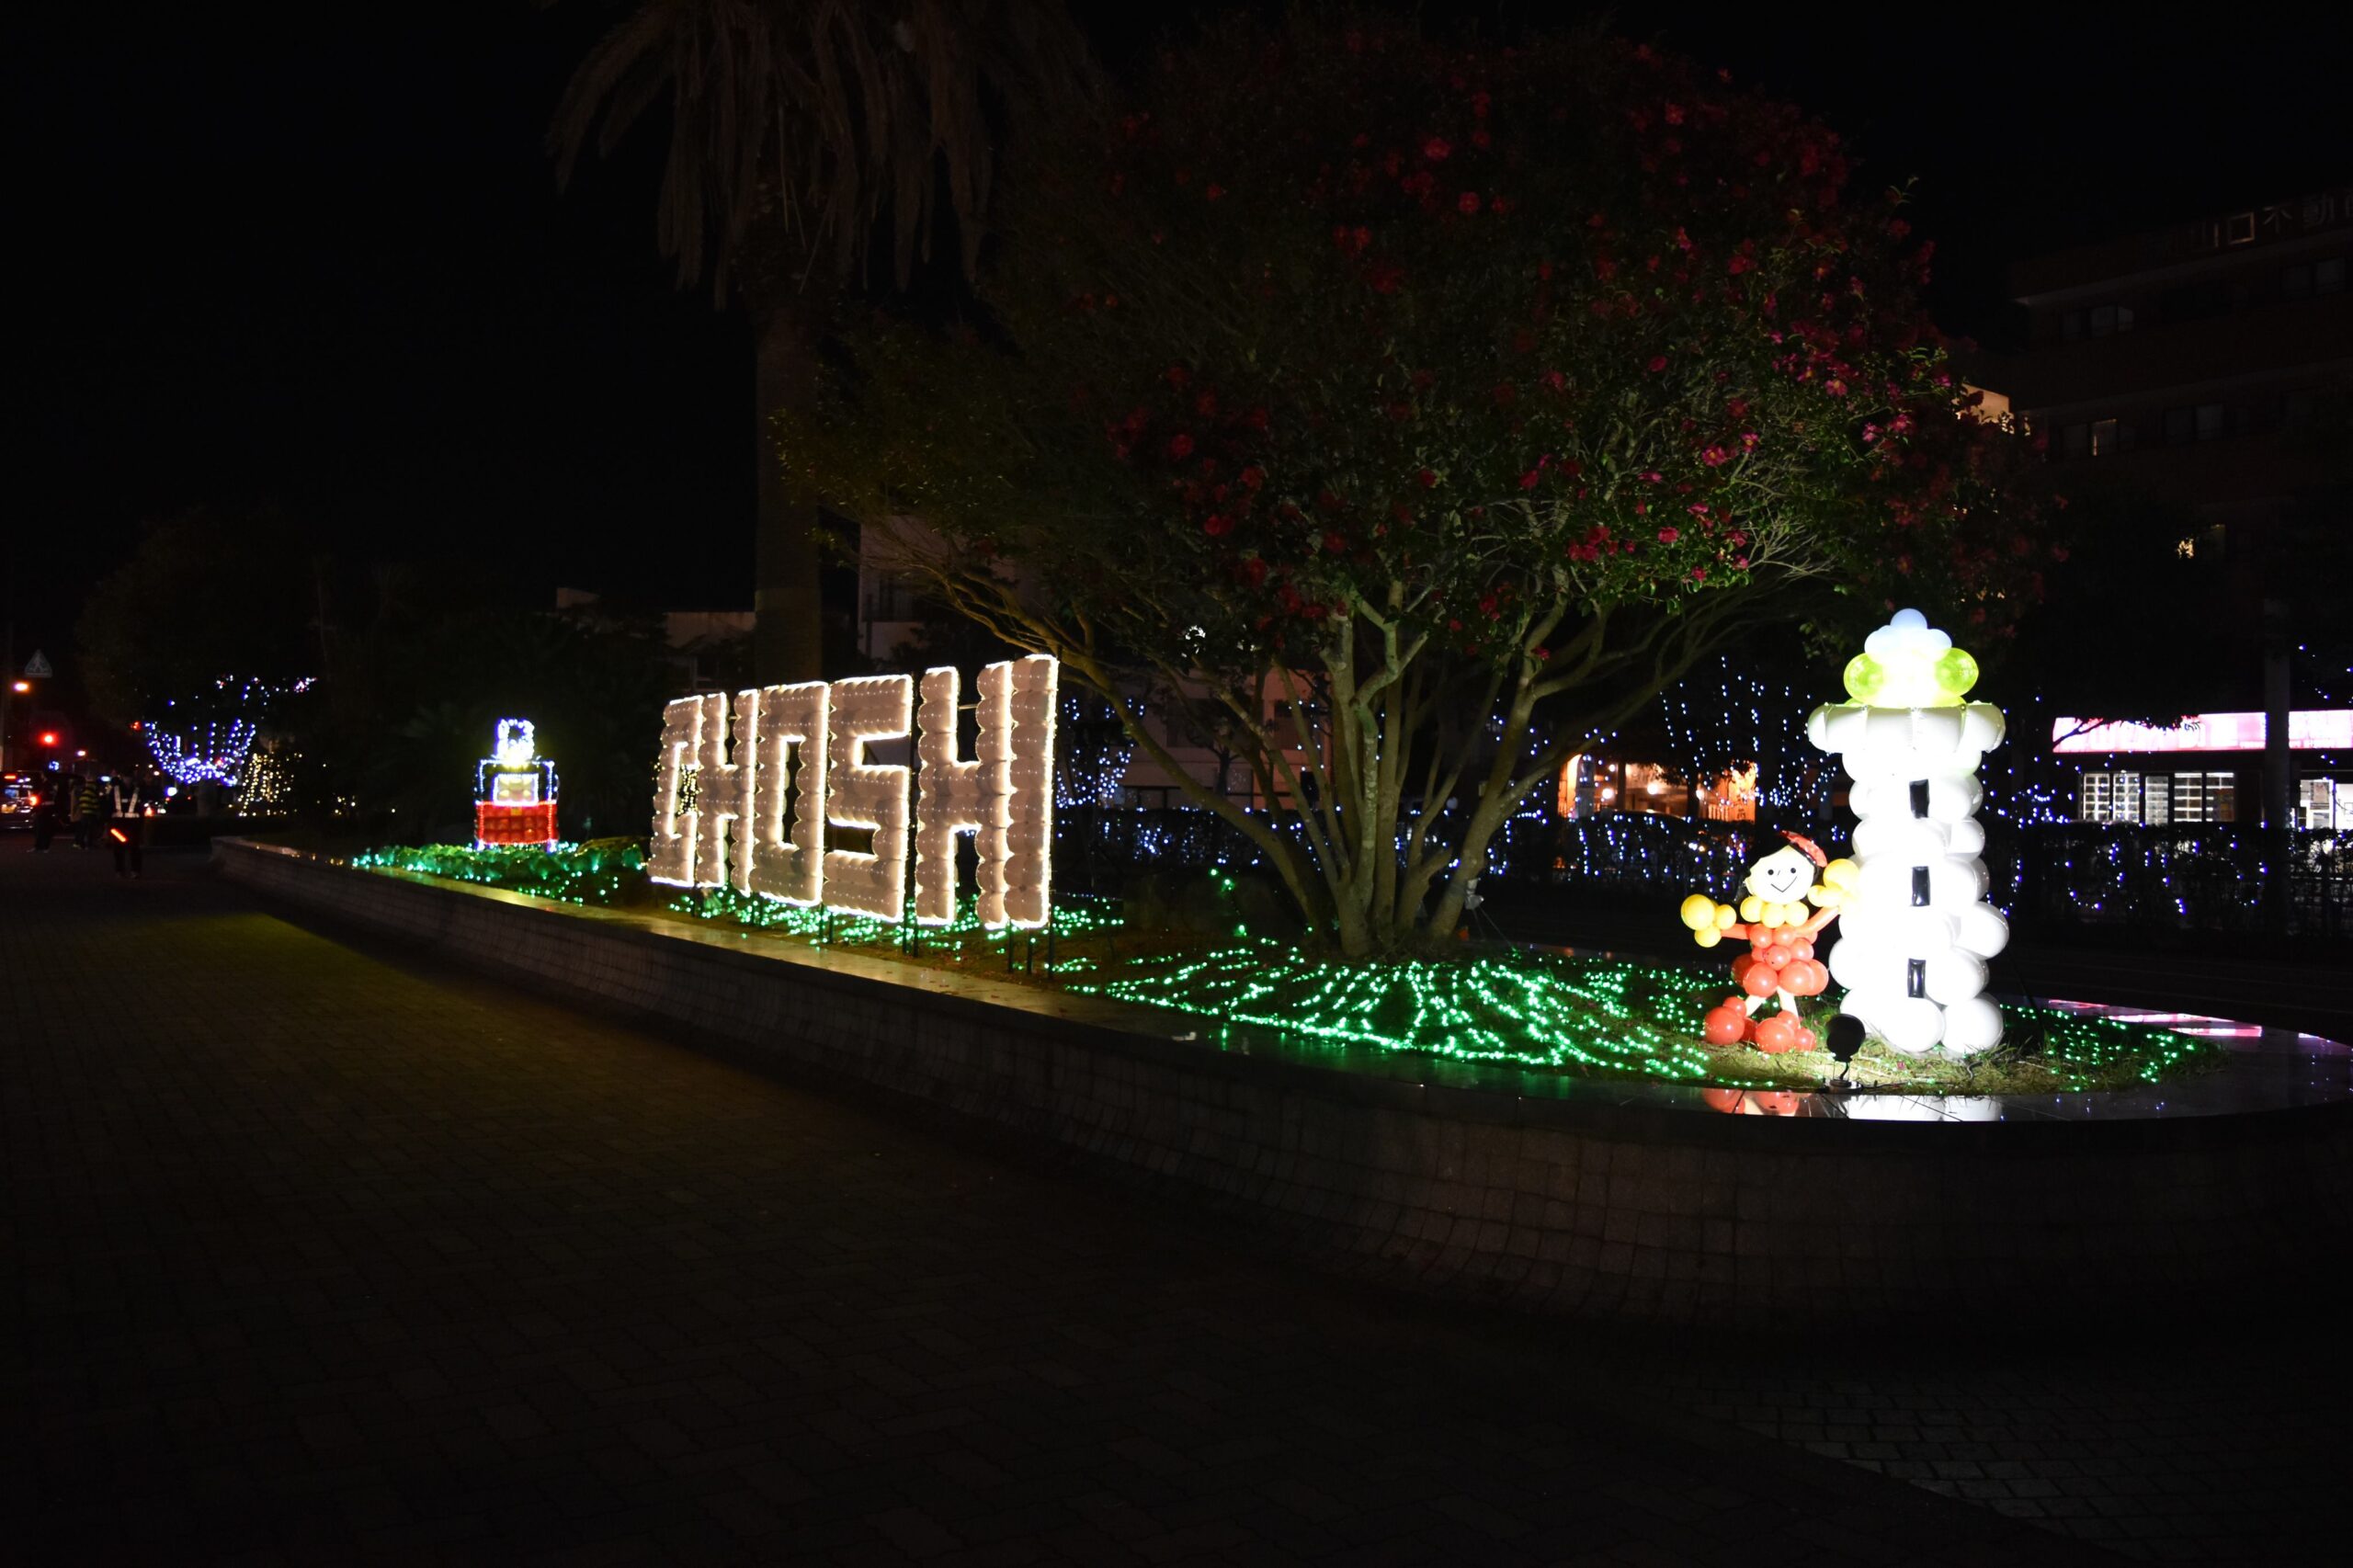 クリスマスを彩る銚子のおすすめイルミネーションスポット 銚子市観光協会